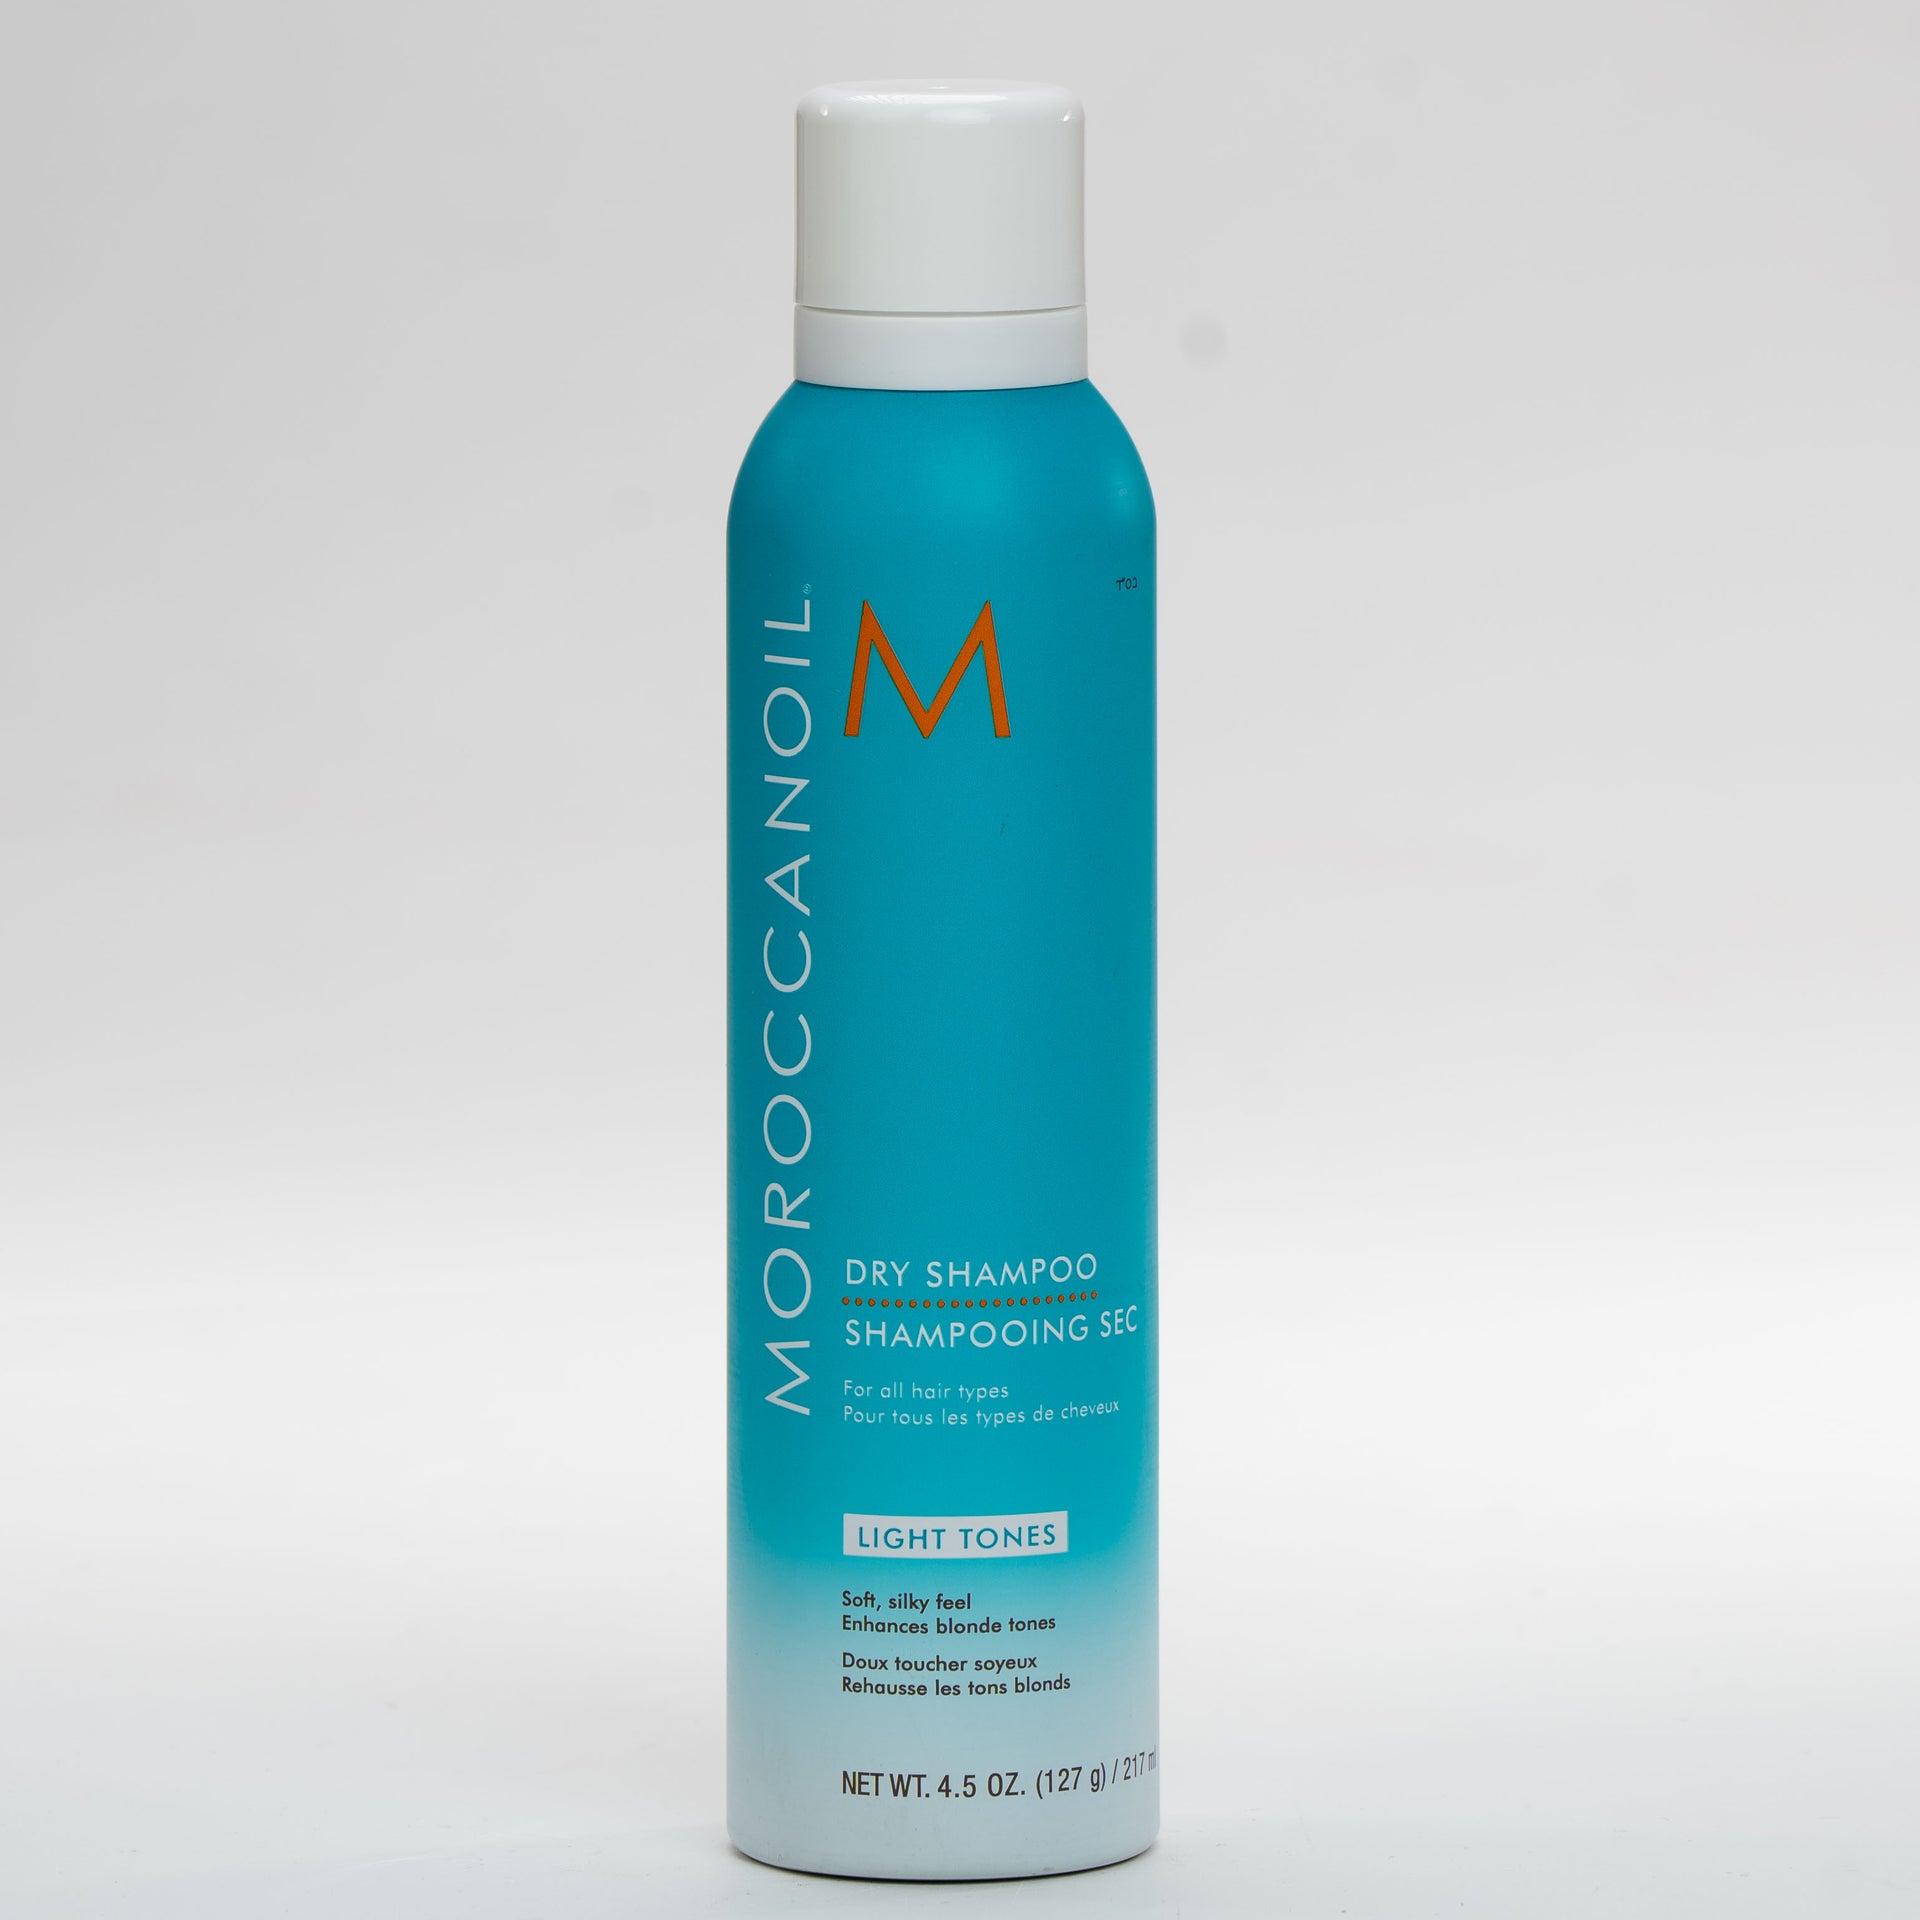 שמפו יבש לגוון שיער בהיר MOROCCANOIL לכל סוגי השיער 205 מ"ל שמן מרוקאי